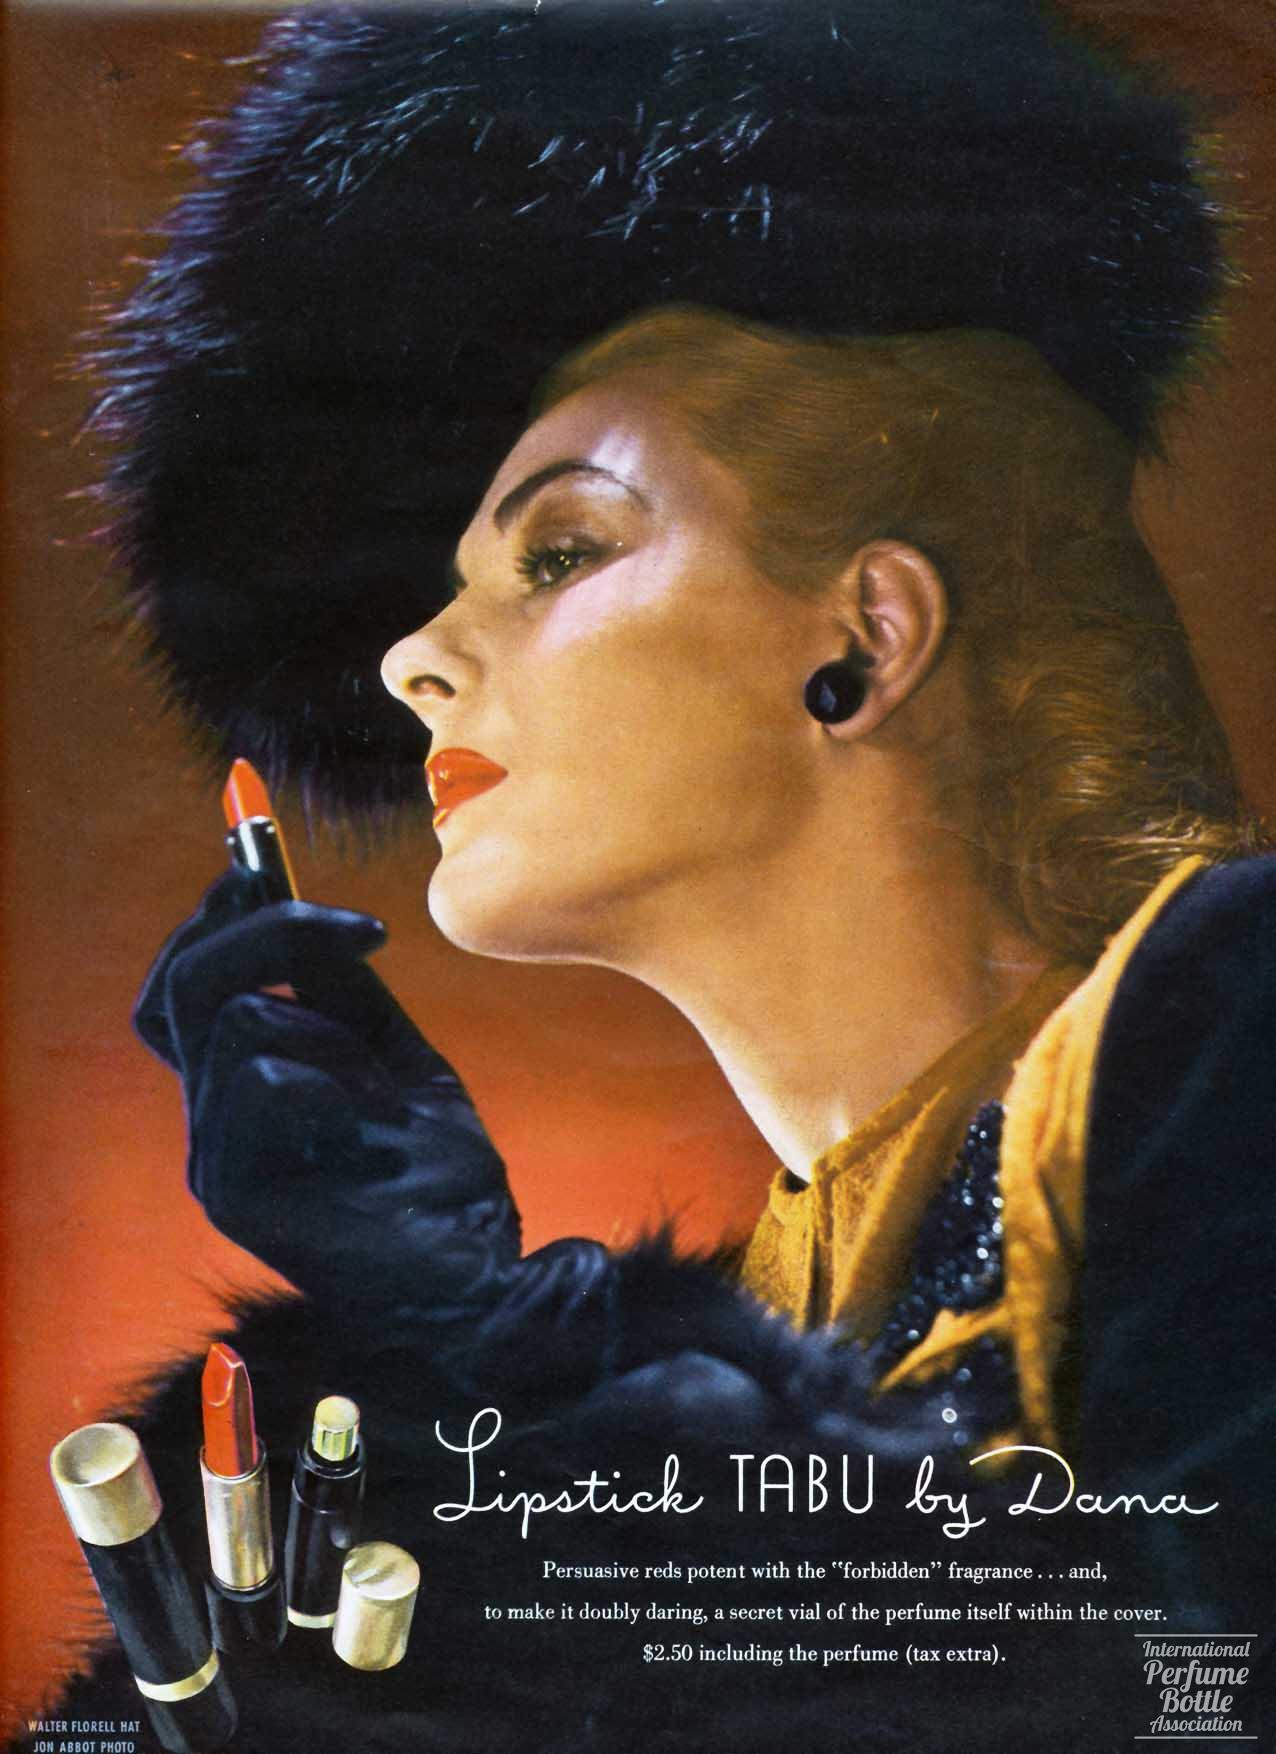 Lipstick and "Tabu" by Dana Advertisement - 1944